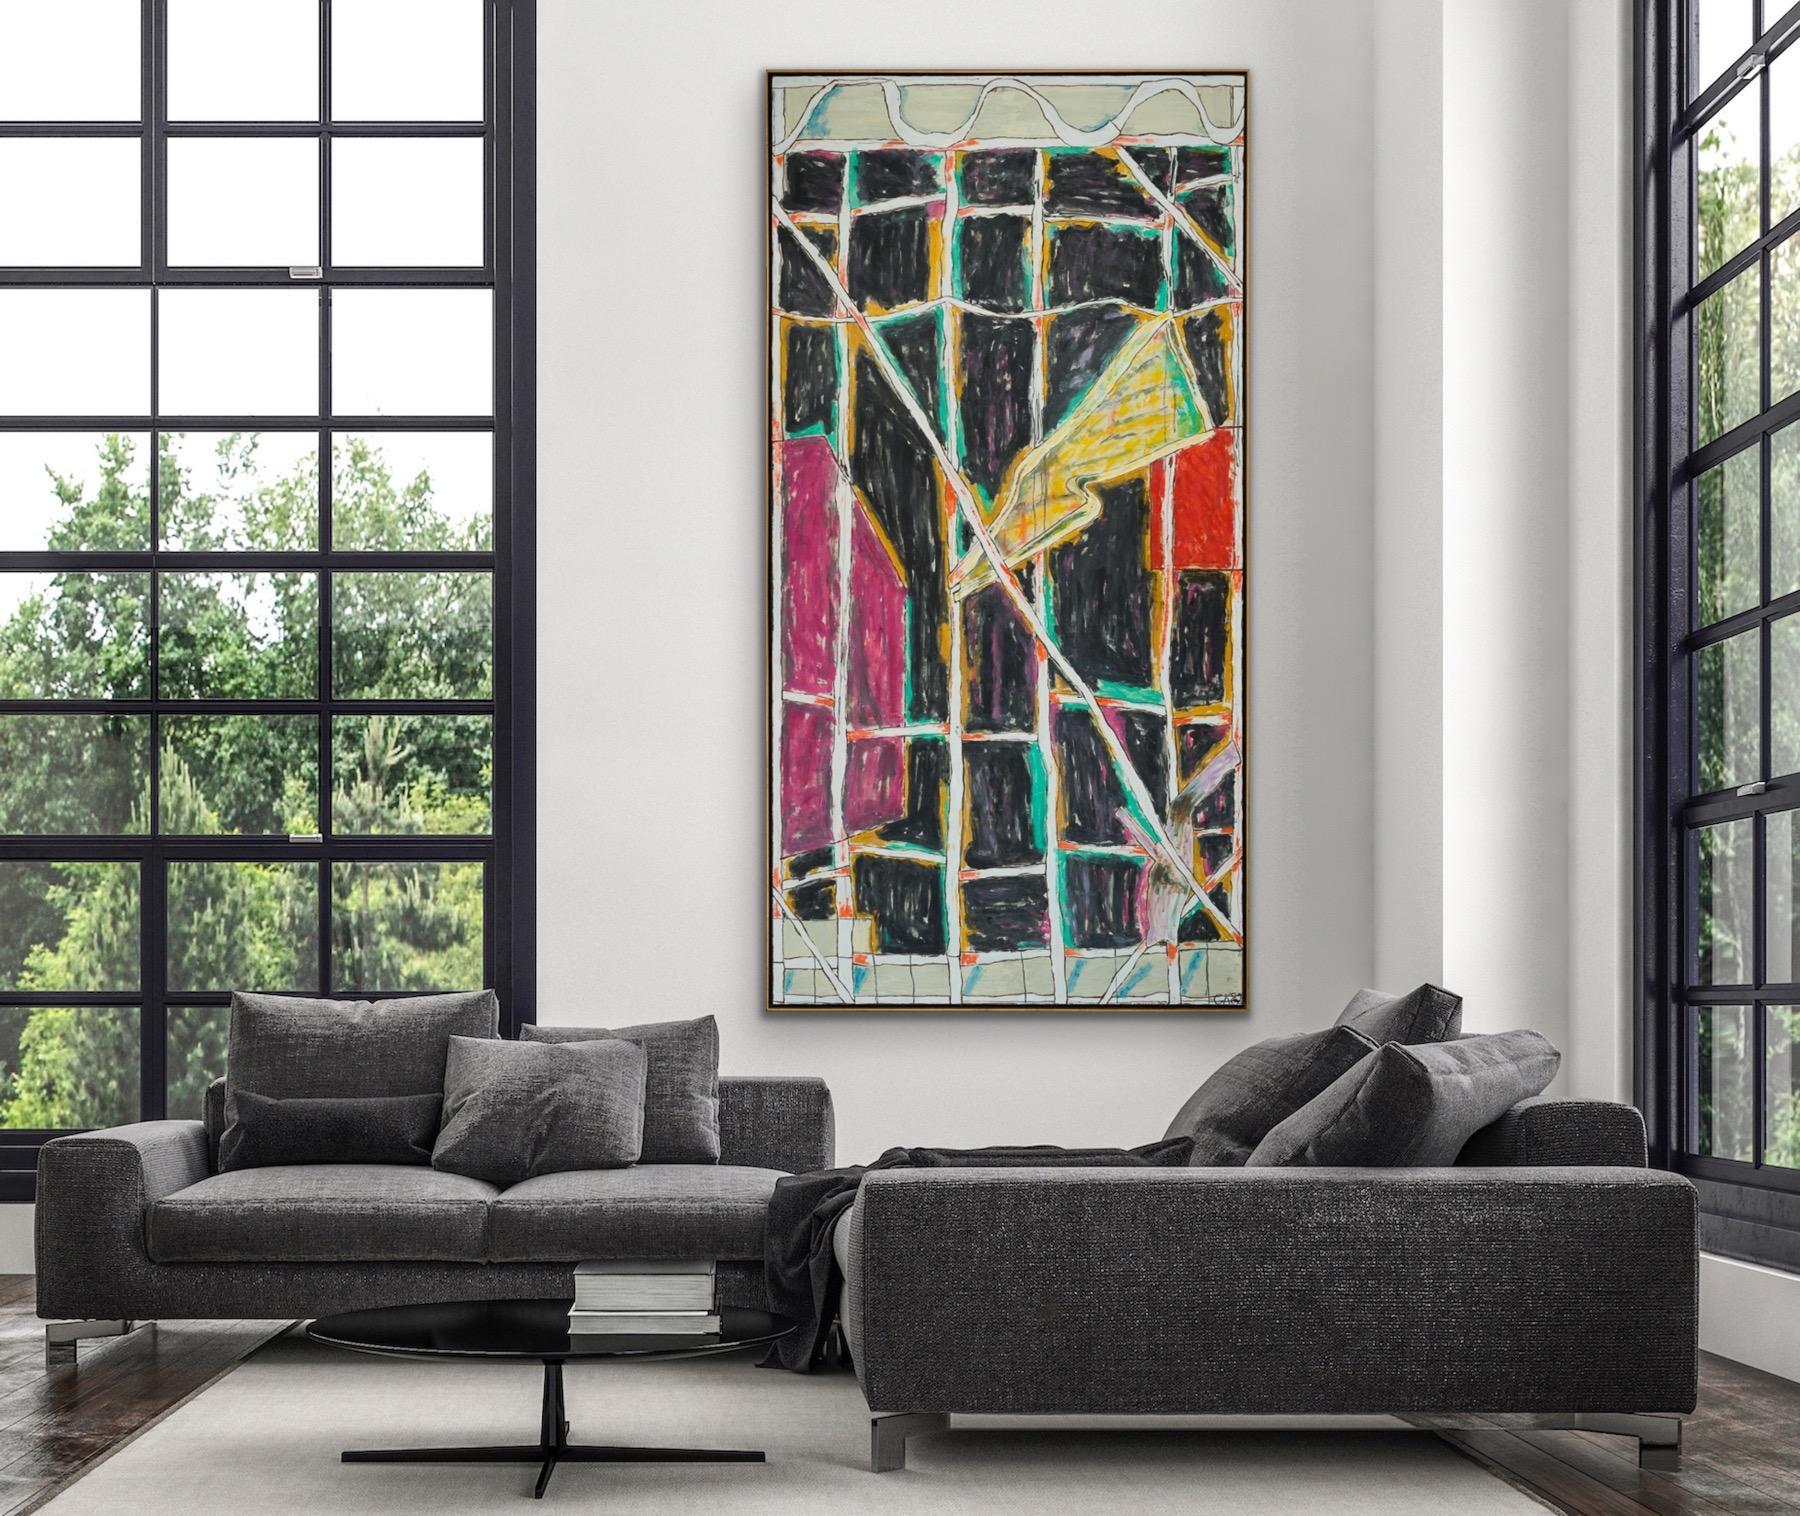 Abstract Painting Craig Kauffman - Phantom - Rouge, Jaune, Noir, Vert, Blanc, Bleu, Magenta & Ochre - 10 pieds de haut